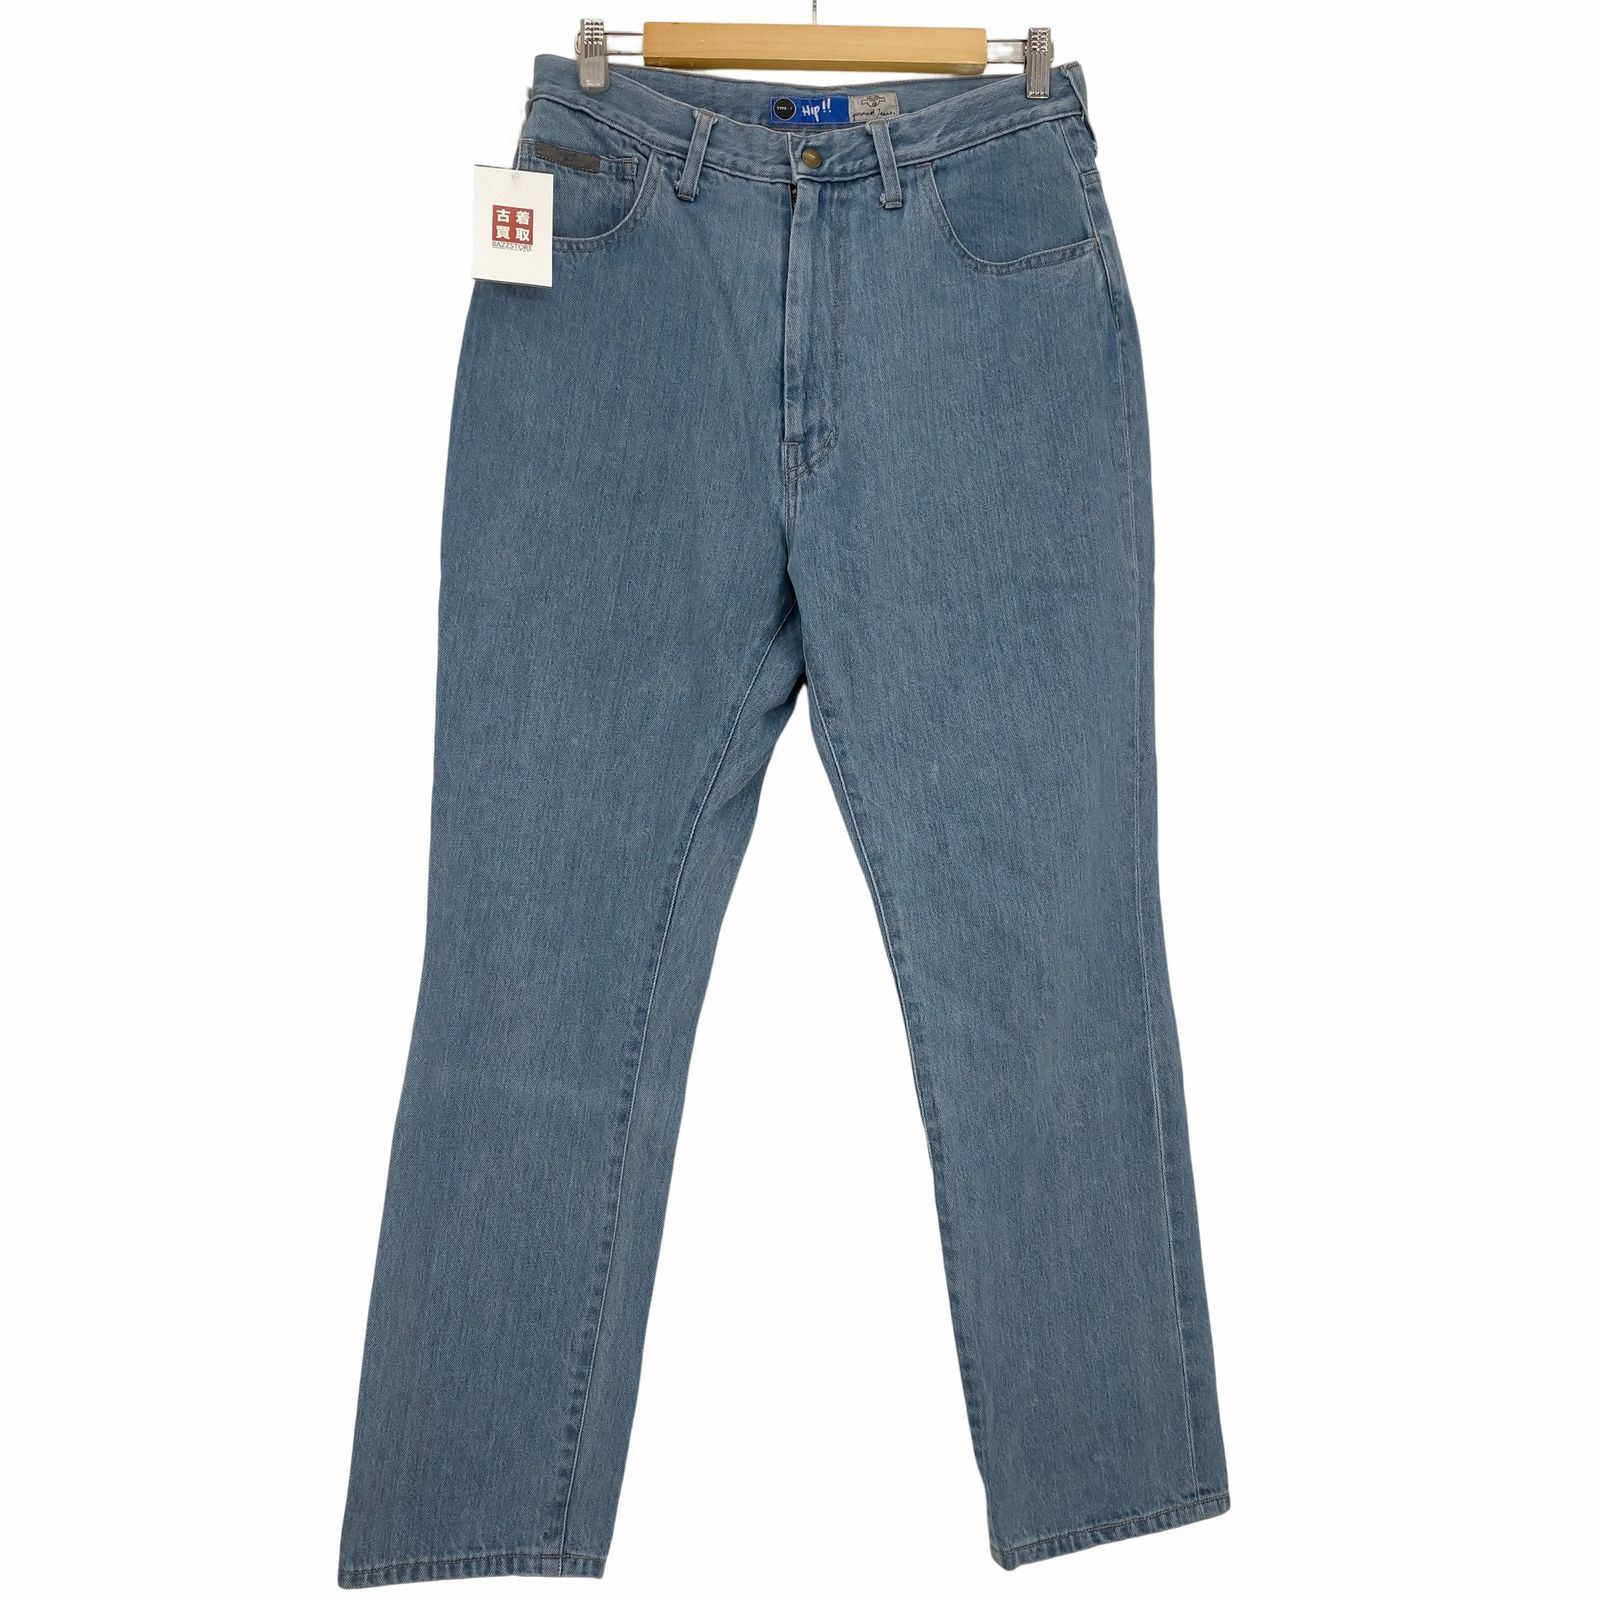 グルメジーンズ gourmet jeans TYPE-1 HIP デニムバギーパンツ メンズ